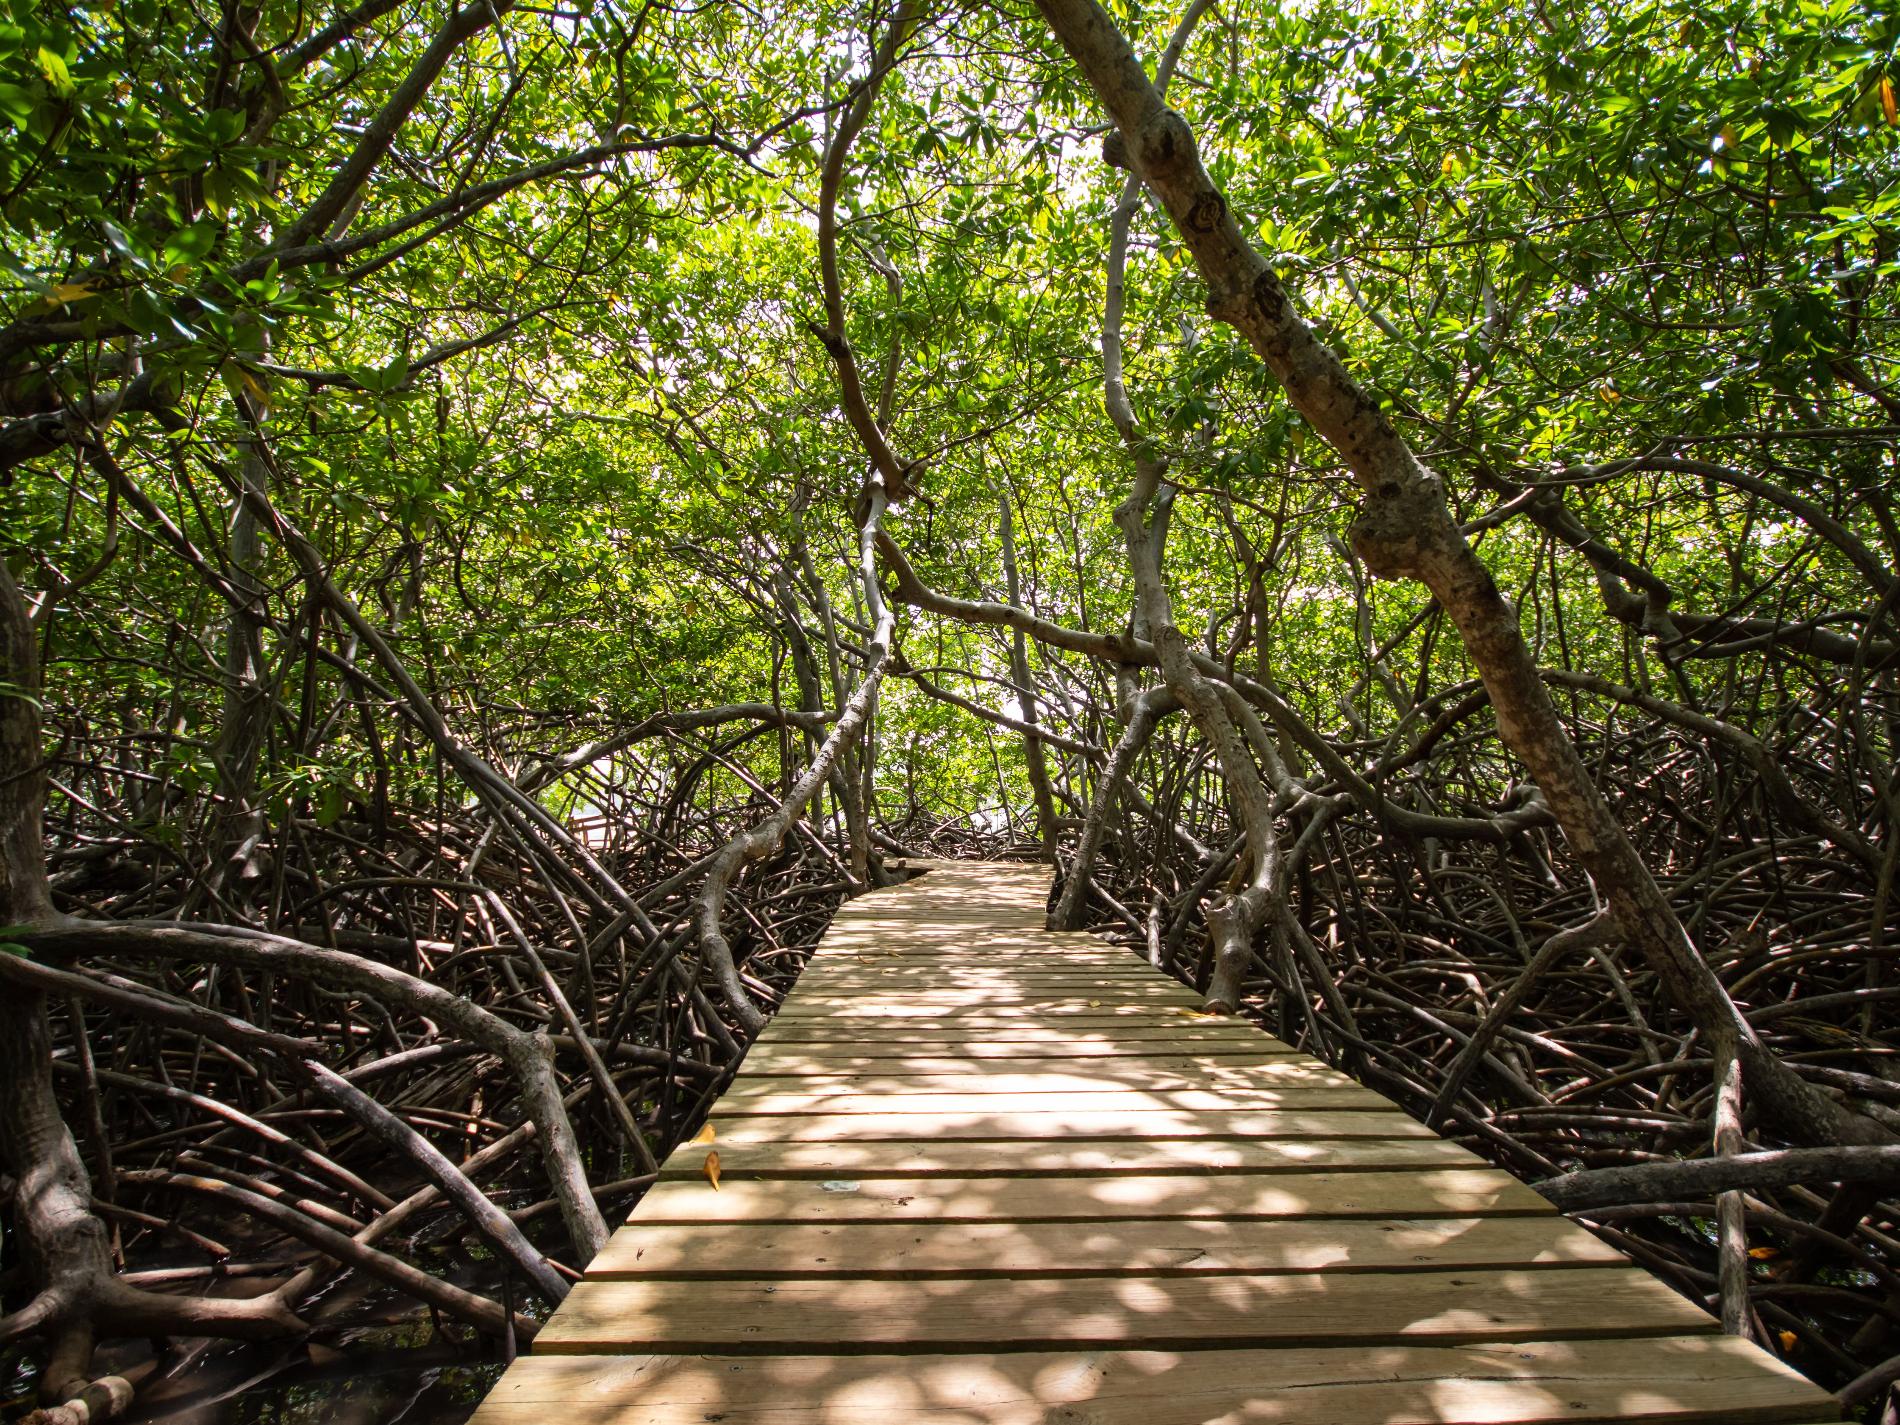 Sentier aménagé dans la mangrove, Martinique © Fabien Lefebvre